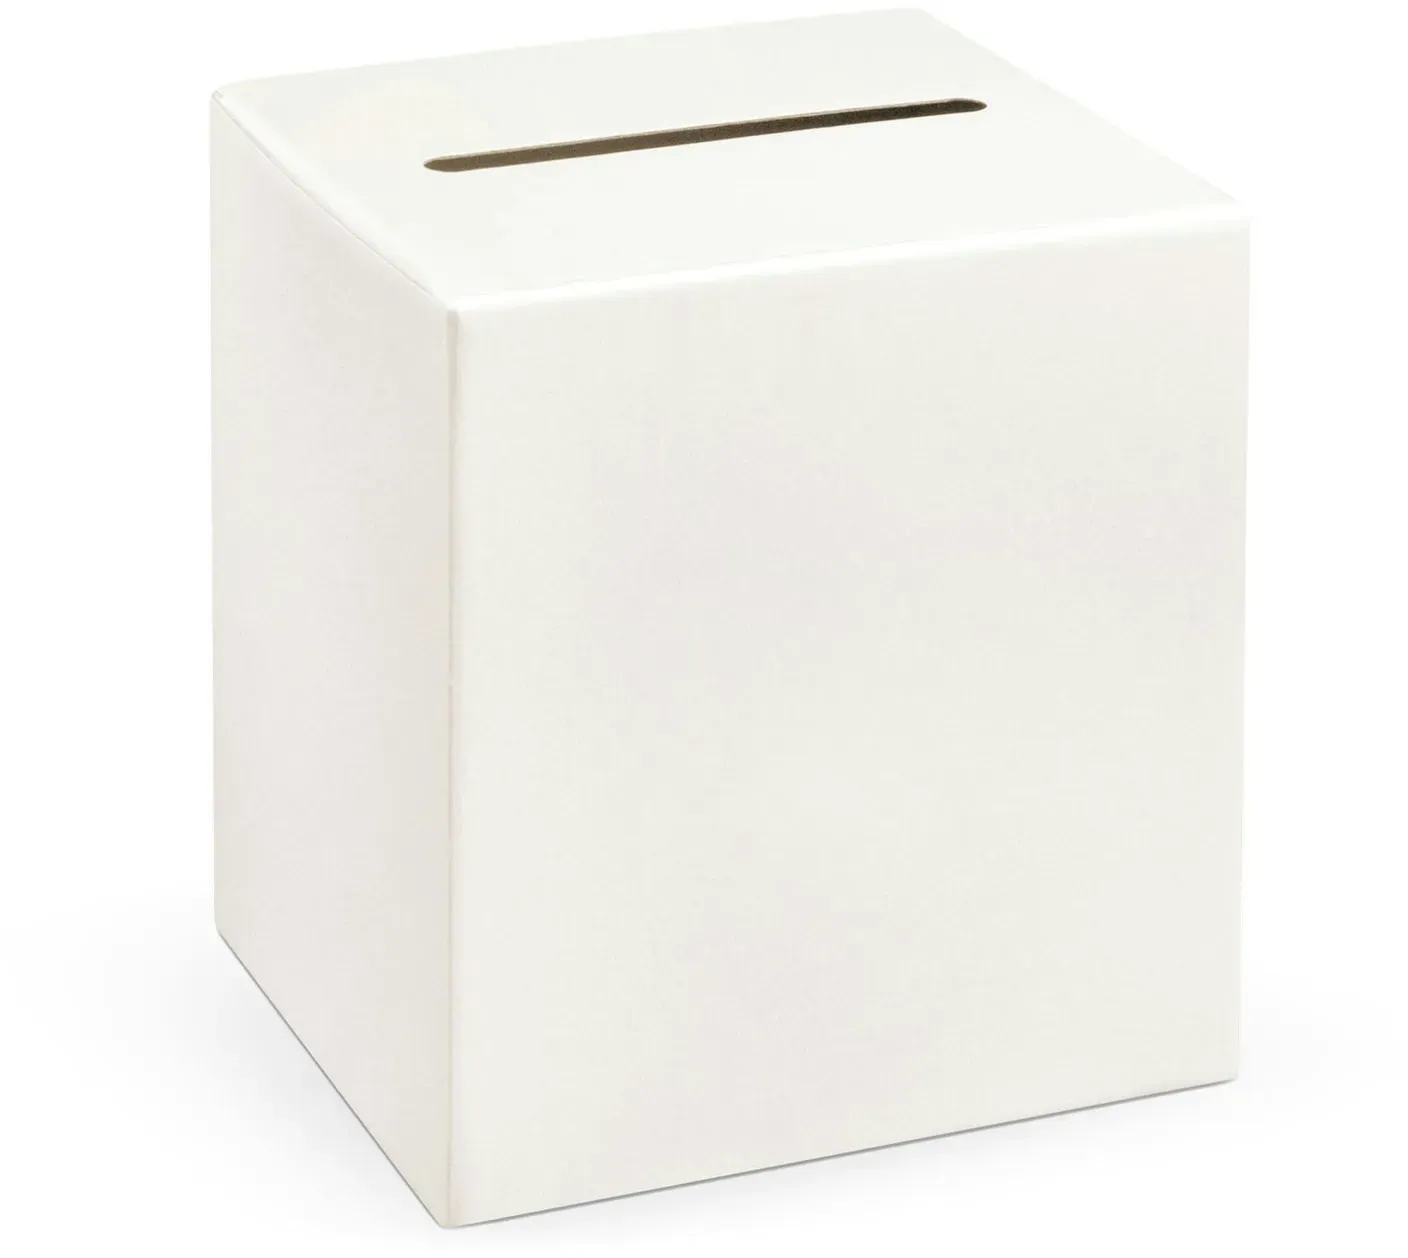 Kartenbox mit Schlitz 24x24cm Papier Geldbox für Geldgeschenke Hochzeitskarten Karten Briefbox Hochzeit Taufe Geburtstag Hochzeitsdeko Box Creme Weiß